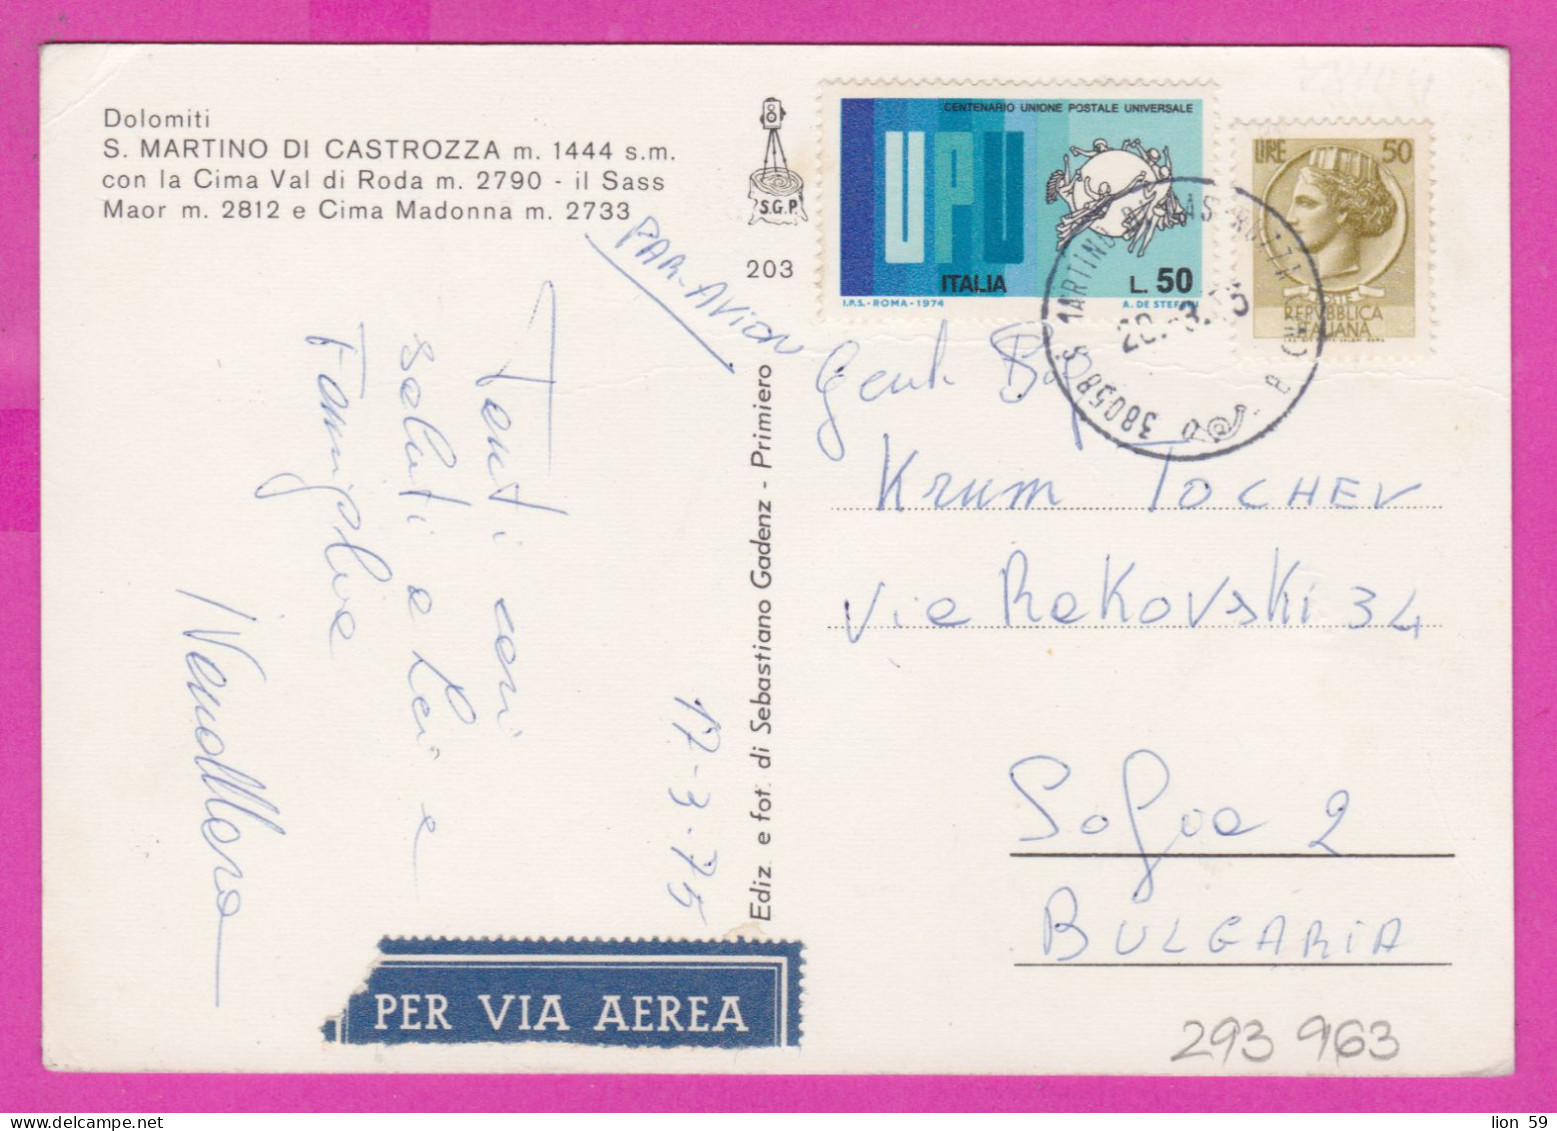 293963 / Italy - Dolomiti S. MARTINO DI CASTROZZA   PC 1975 Per Via Aerea USED 50+50 L Coin Of Syracuse UPU U.P.U. - 1971-80: Marcofilie